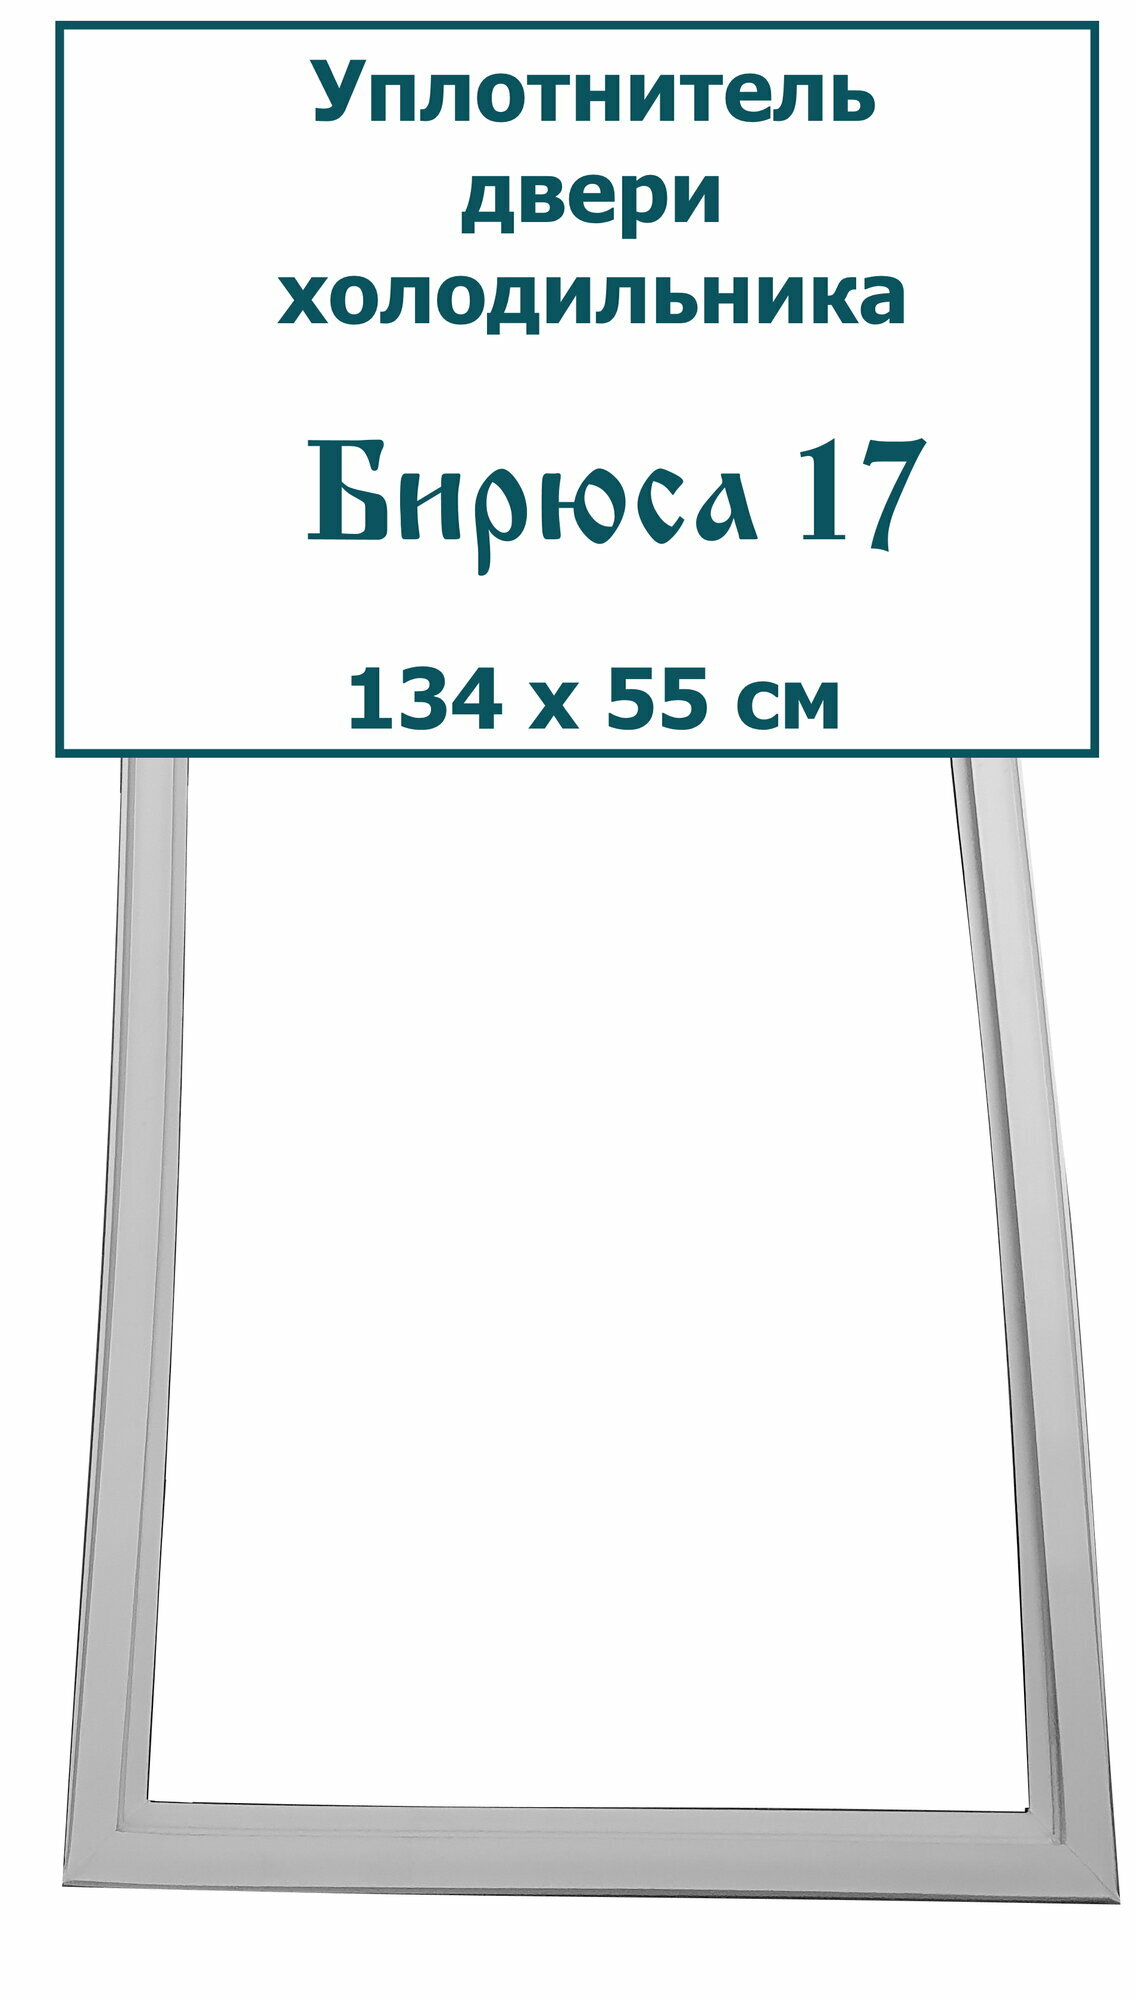 Уплотнитель для двери холодильника Бирюса 17, (134 x 55 см)